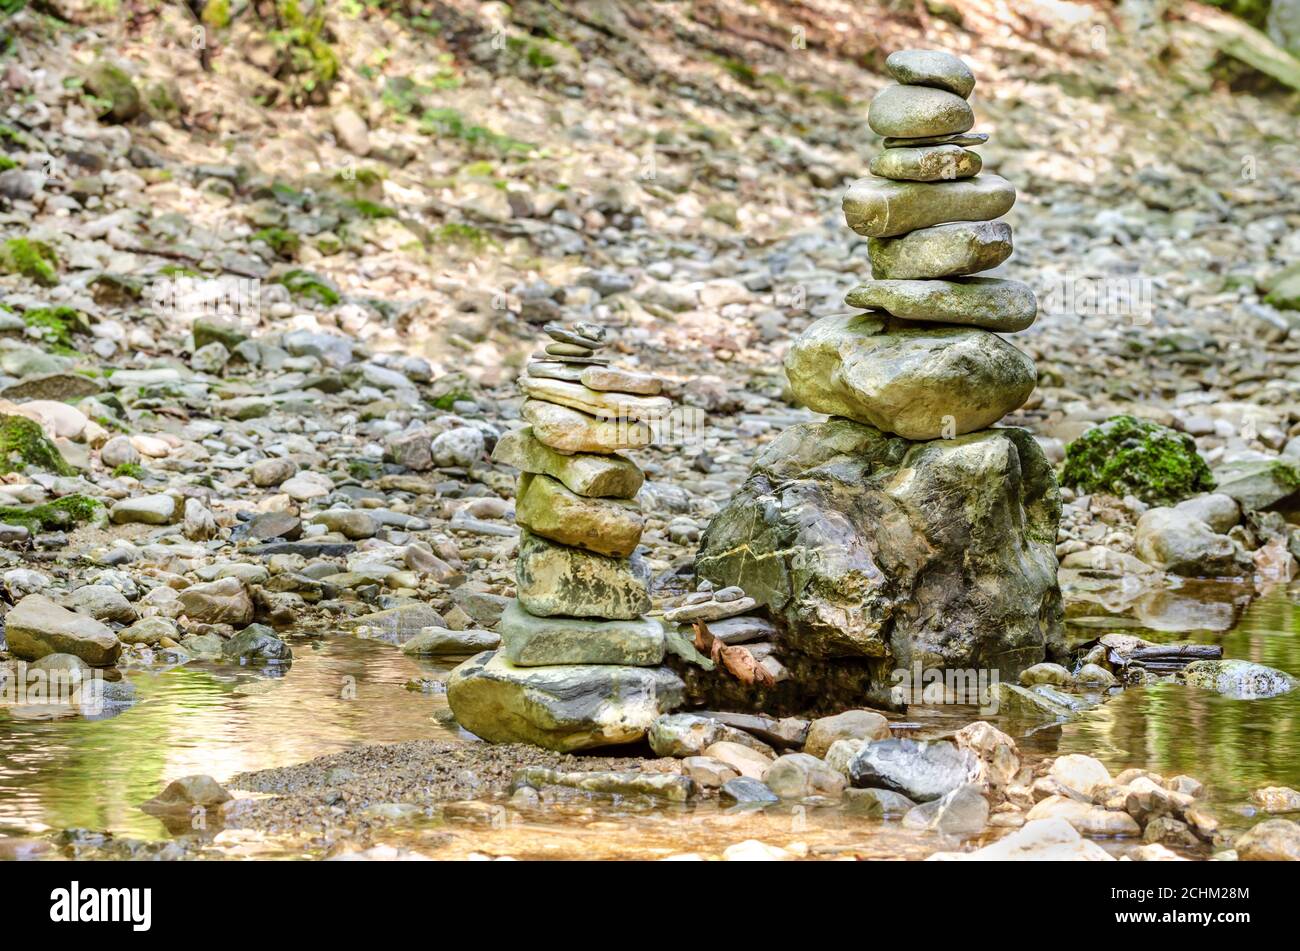 Bilanciamento della roccia. Due pile di rocce impilate in un letto di fiume. Rocce posate piatte l'una sull'altra a grande altezza. Rocce equilibrate al torrente. Foto Stock